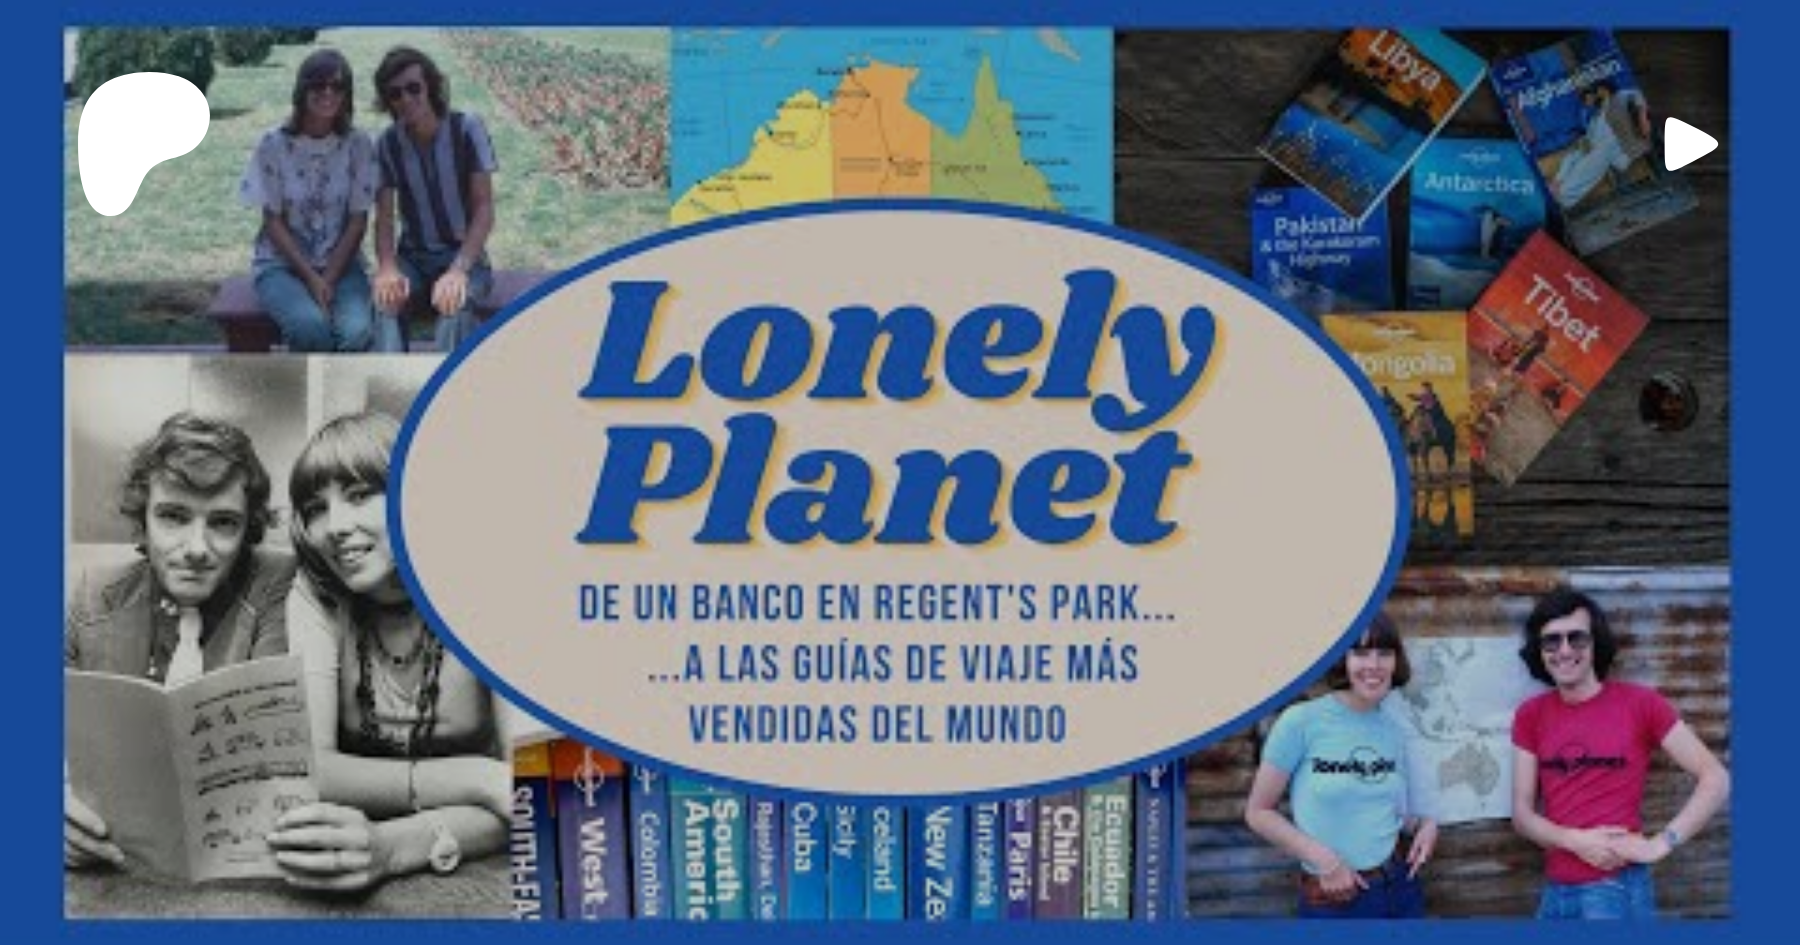 de　a　Patreon　De　un　banco　las　parque　vendidas　en　46:　guías　de　viaje　más　Teddy　Planet　Lonely　Londres